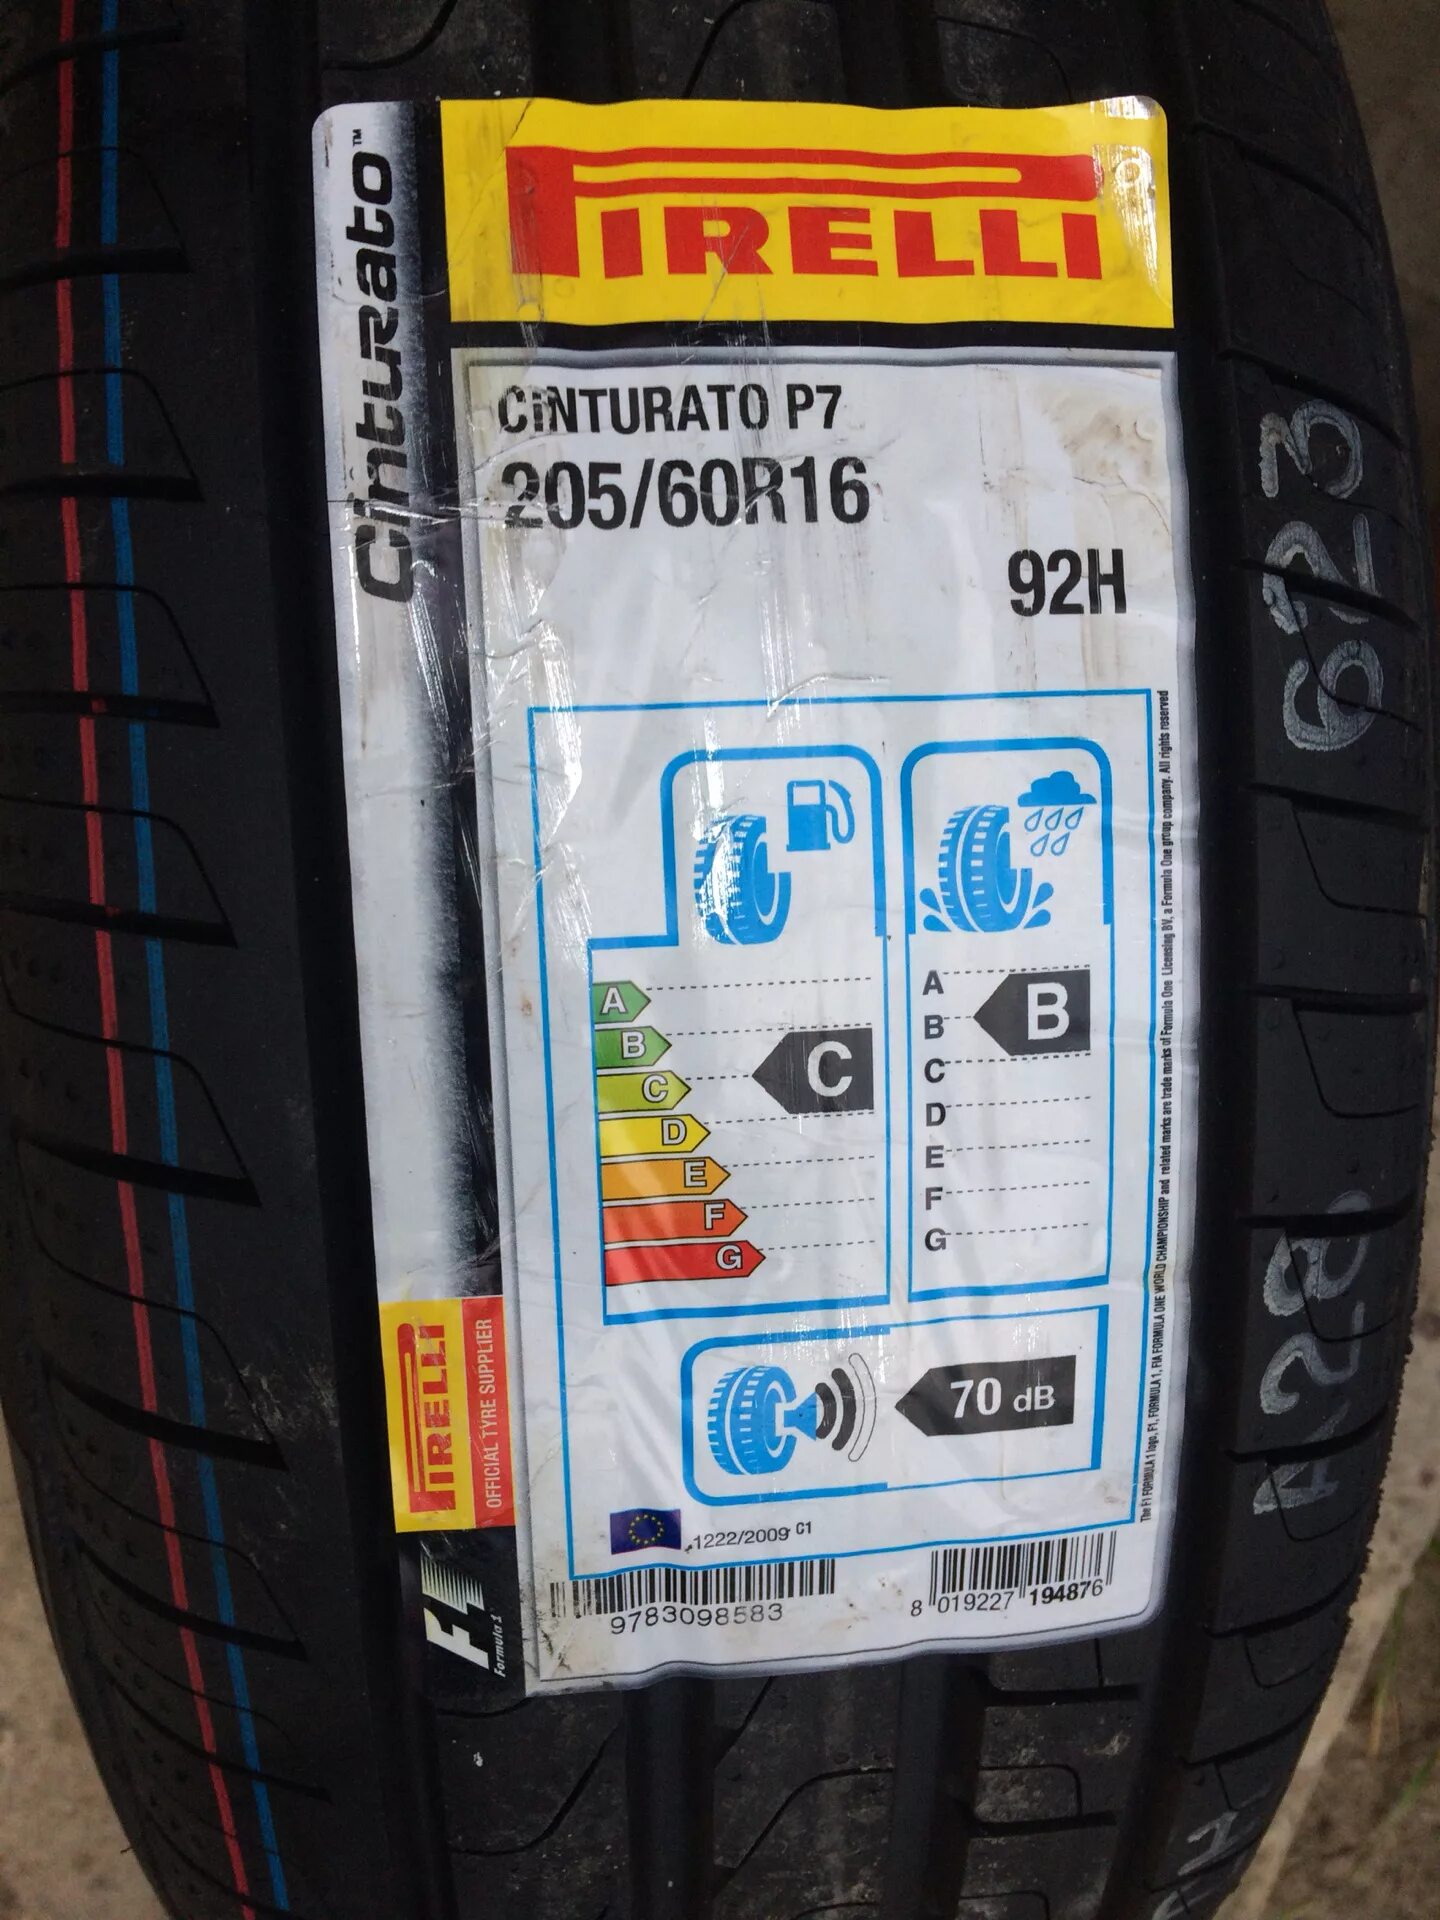 Шины pirelli 205 55 r16 отзывы. 205/60/16 Pirelli Cinturato p7. Автошина 205/60-16 Pirelli Cinturato p7 92h. Шины Пирелли Цинтурато р7 205/60 r16. Пирелли p7 205/60 r16.